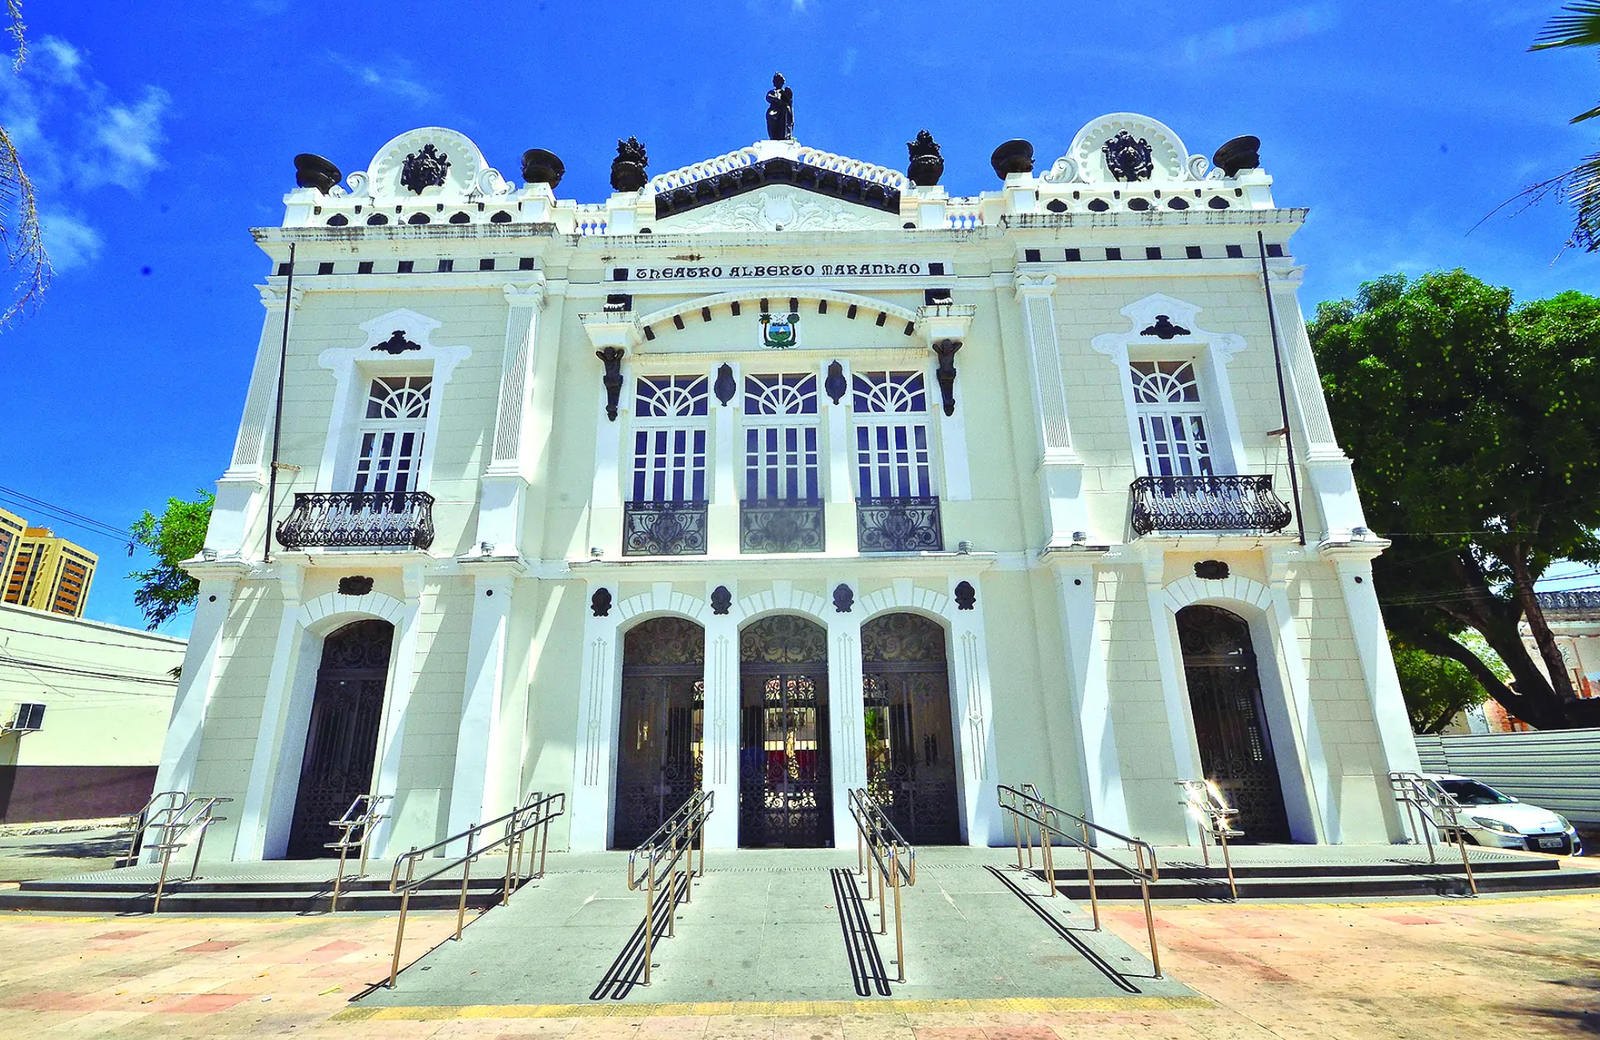 Teatro Alberto Maranhão celebra 120 anos com concerto gratuito